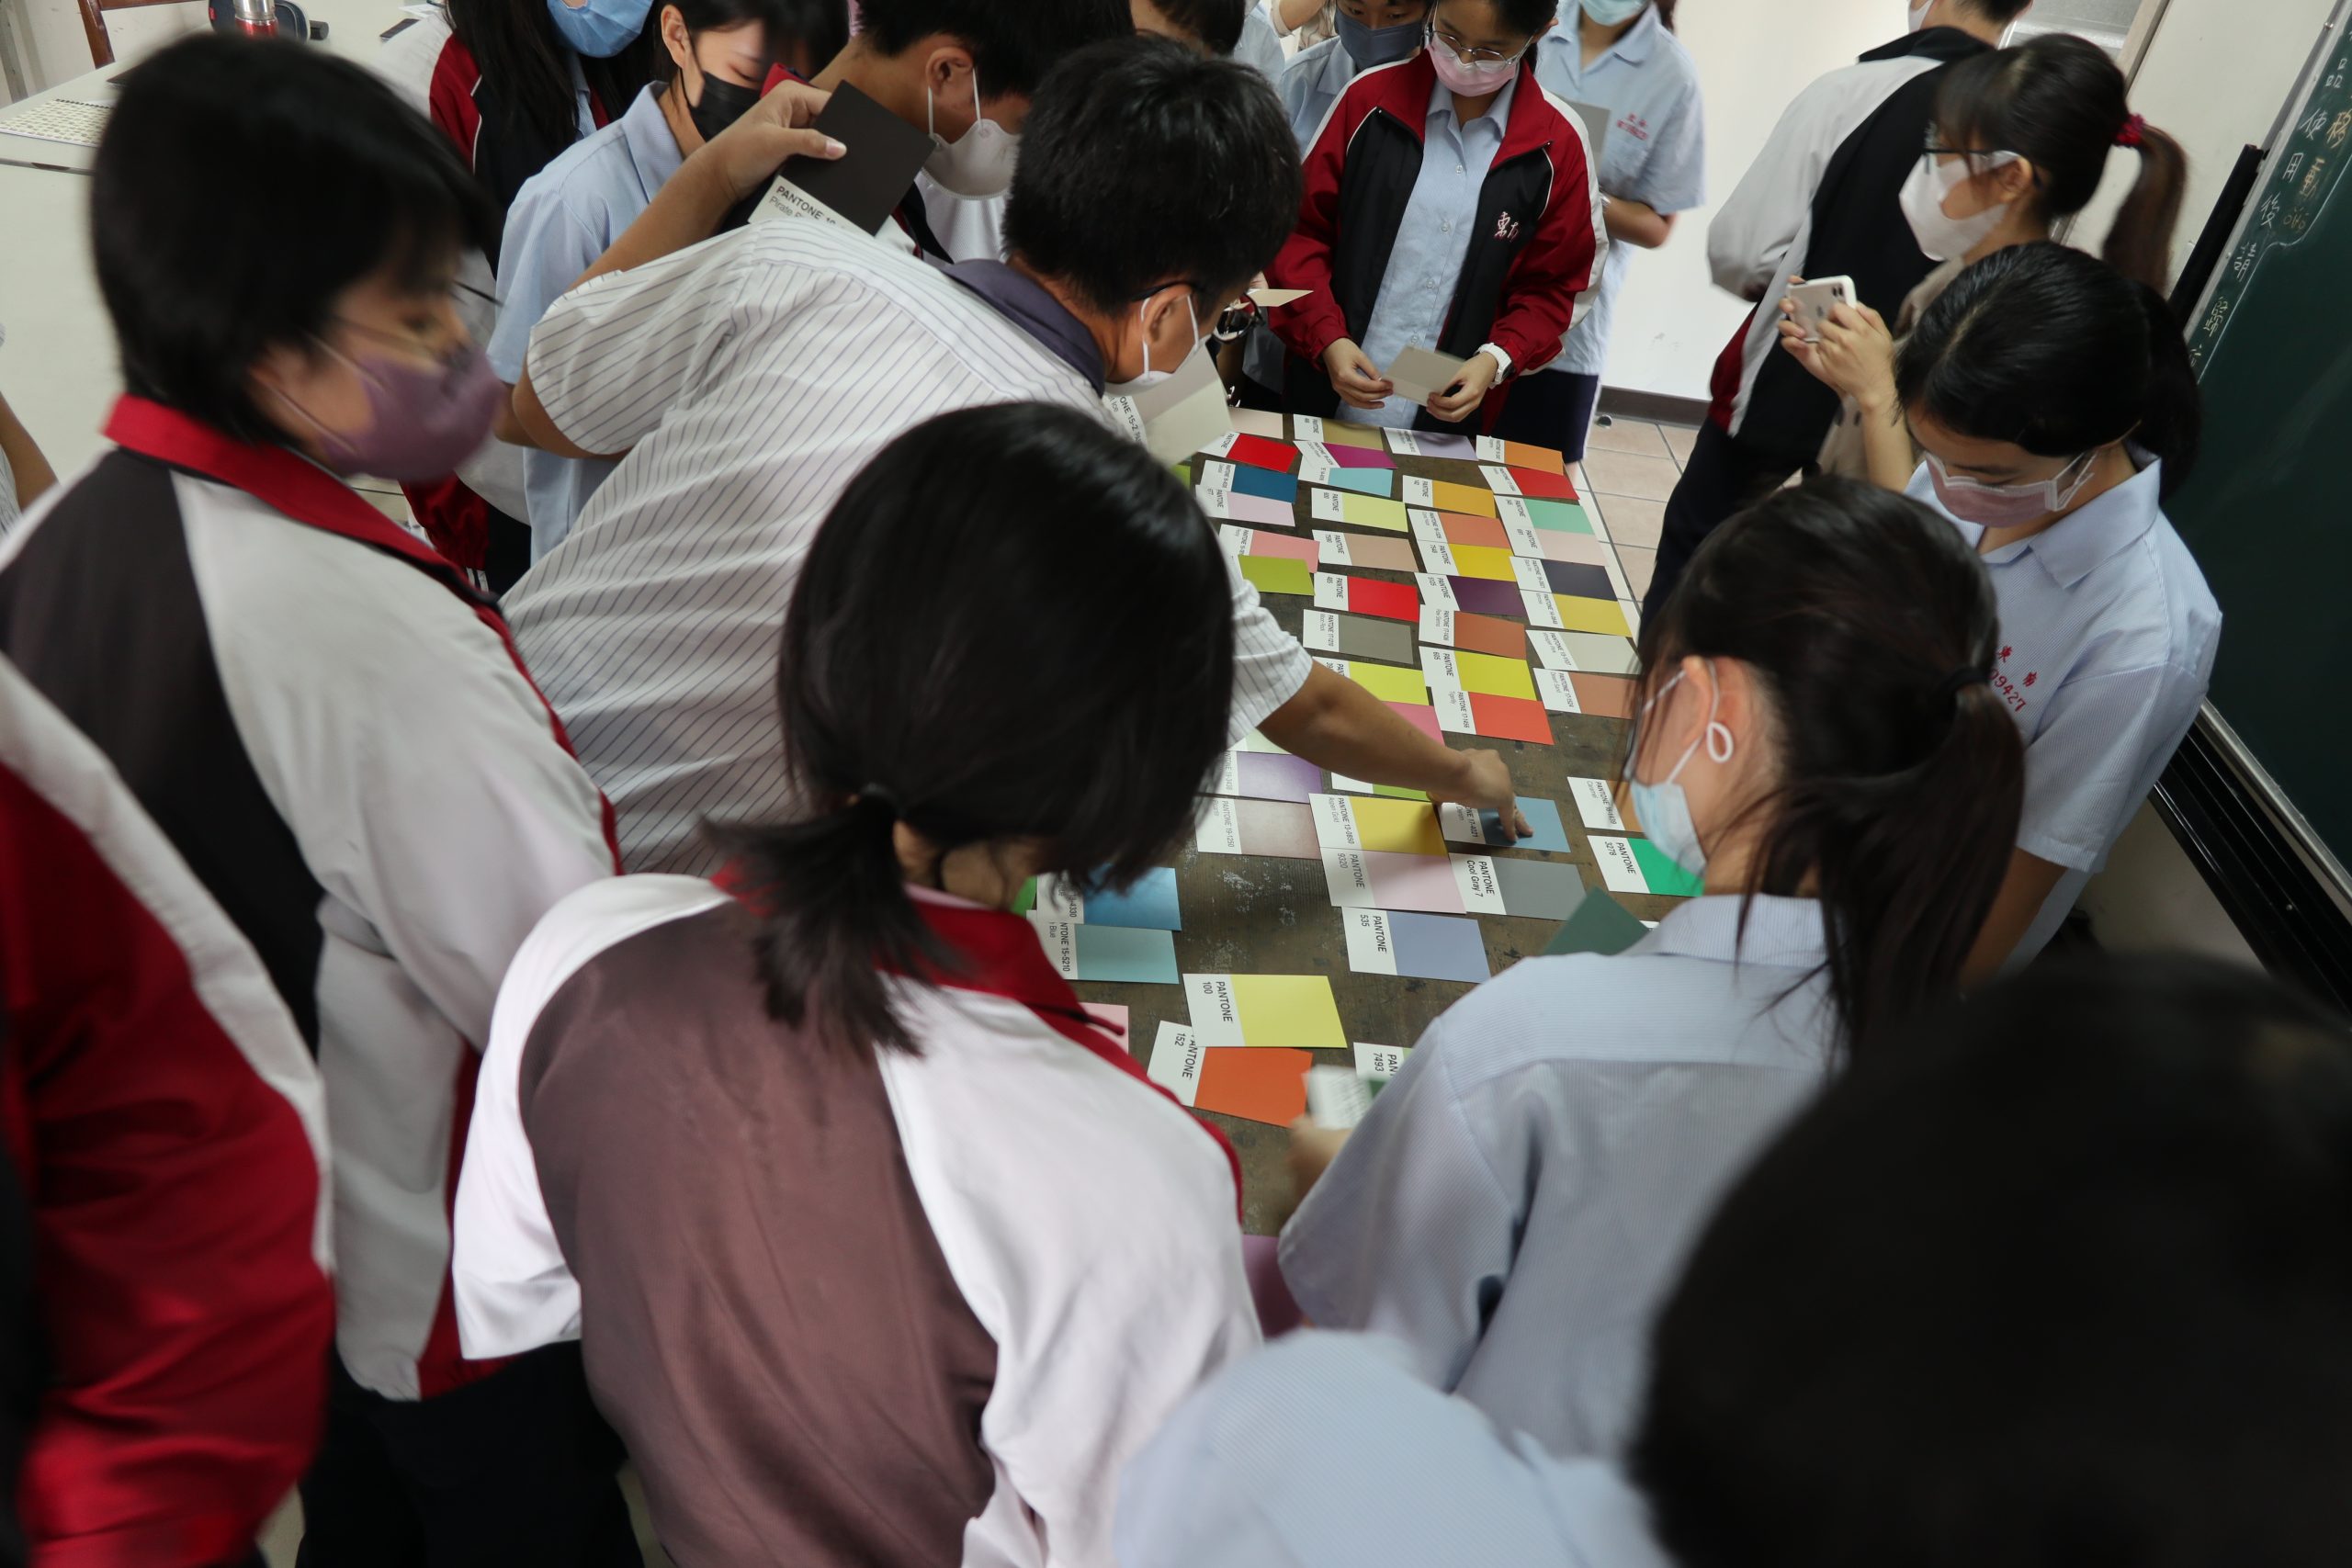 111學年度第二學期於雲林縣私立東南國民中學施辦自拍拼圖課程實作紀錄系列照片共31張